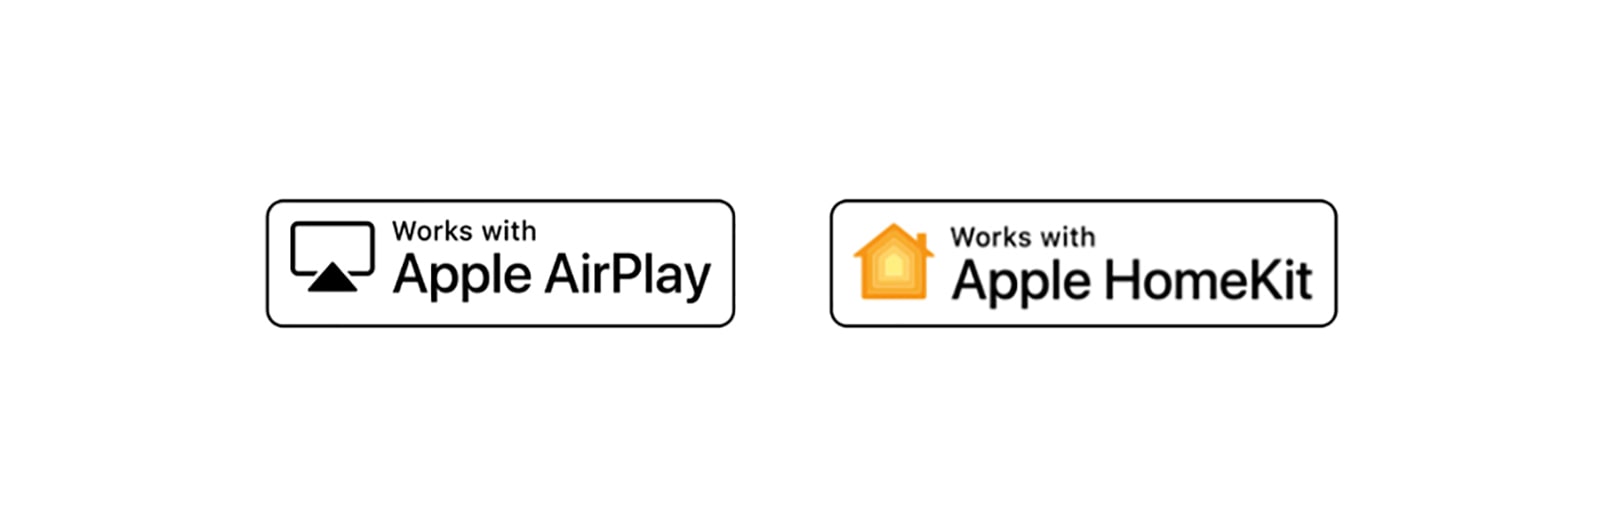 Деталі, на яких показано логотипи служб Apple Airplay та Apple HomeKit, сумісних із технологією ThinQ з функціями штучного інтелекту